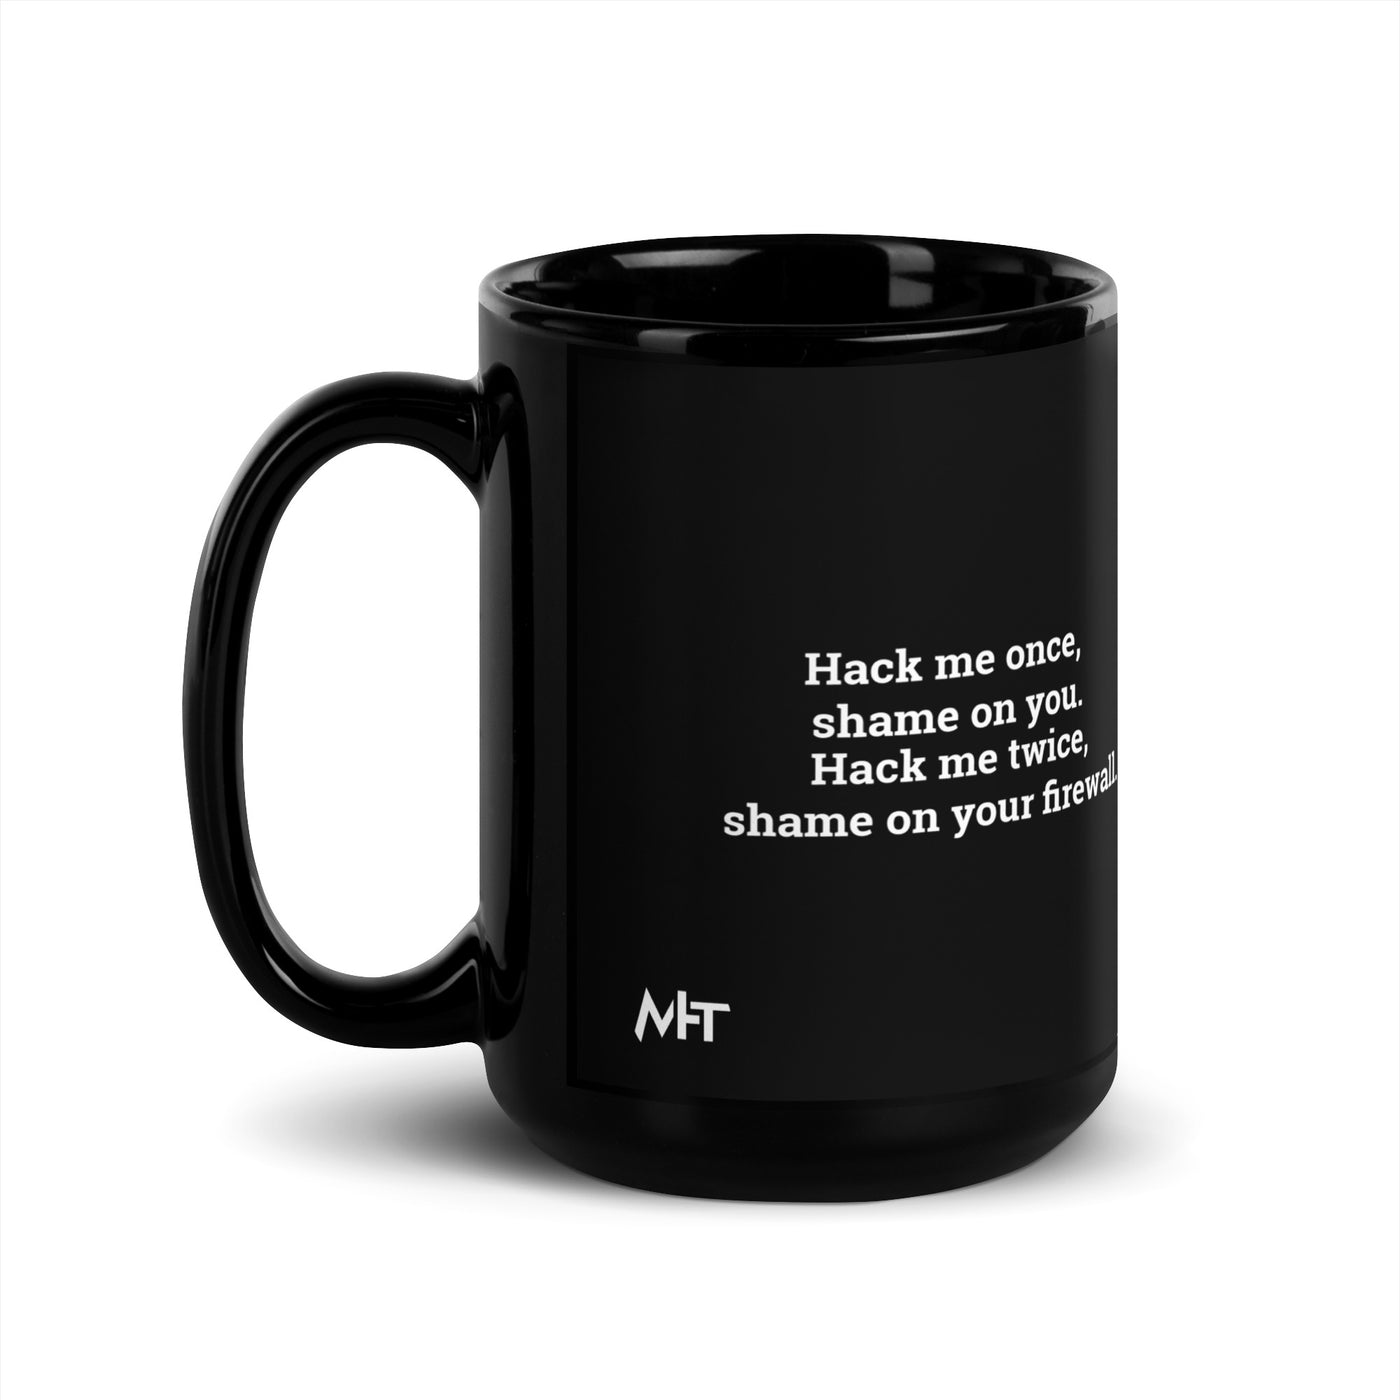 Hack me twice: shame on You, Firewall V2 - Black Glossy Mug